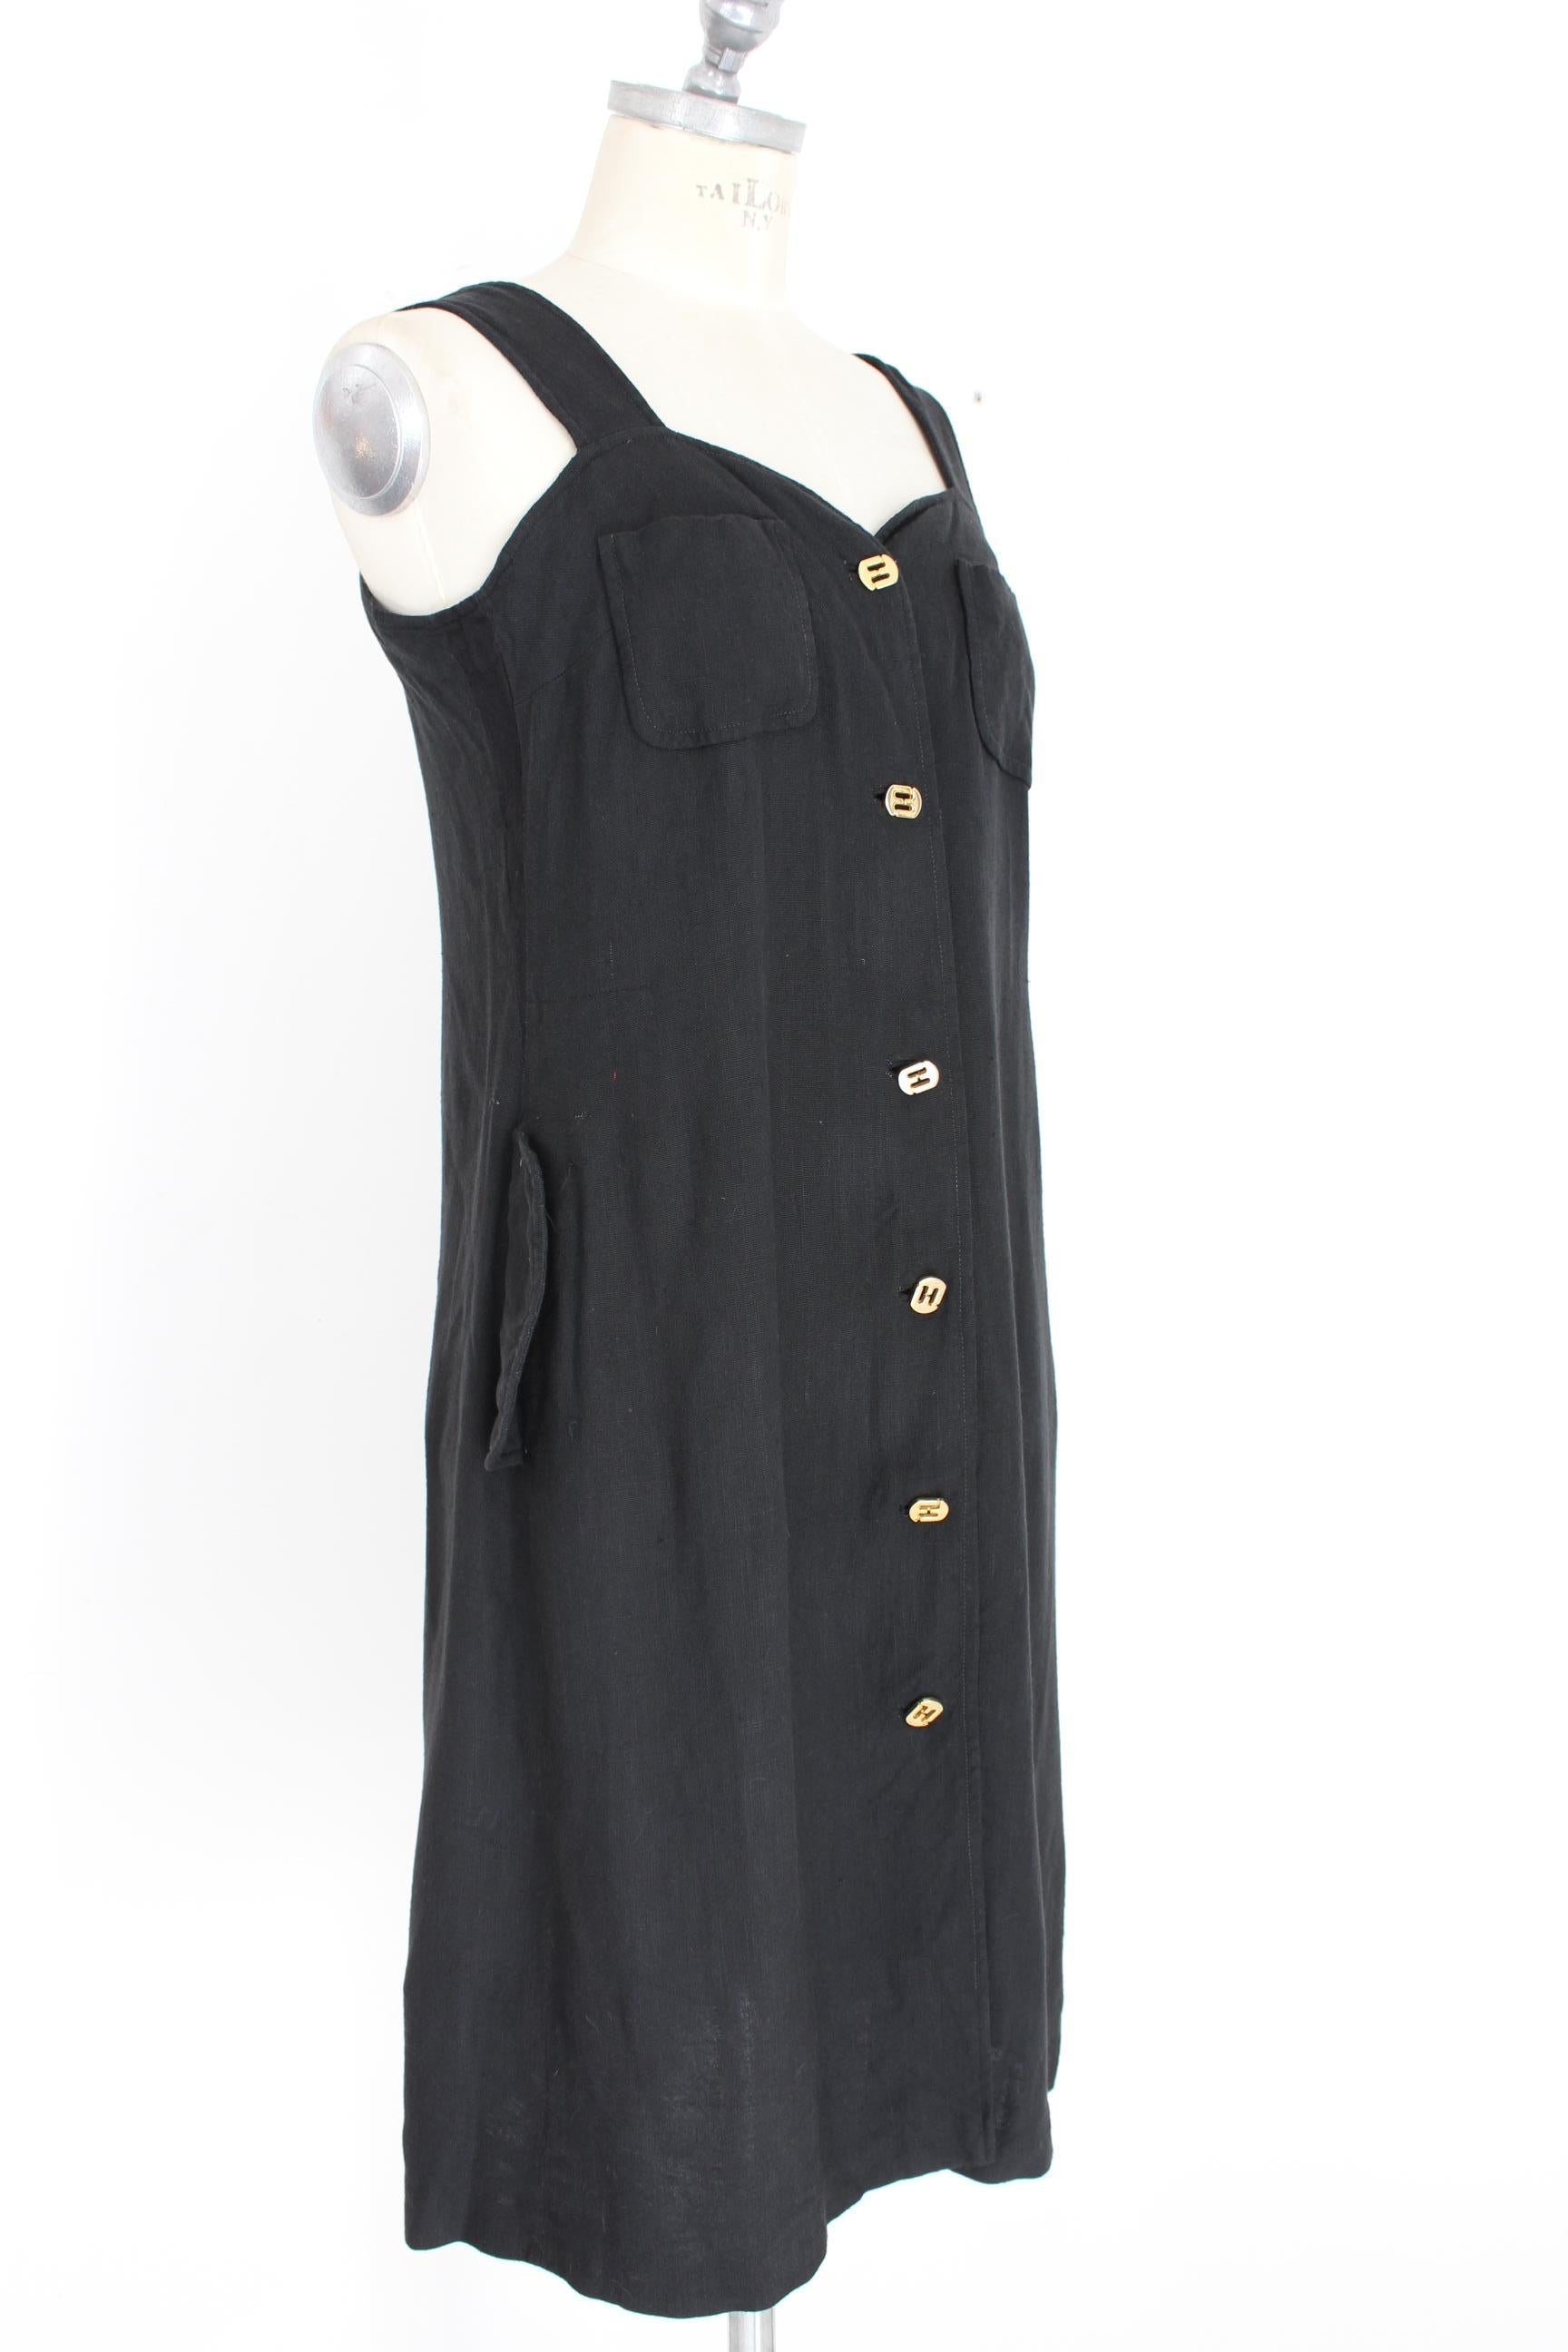 Salvatore Ferragamo Black Viscose Long Cocktail Suit Dress 1990s For Sale 1